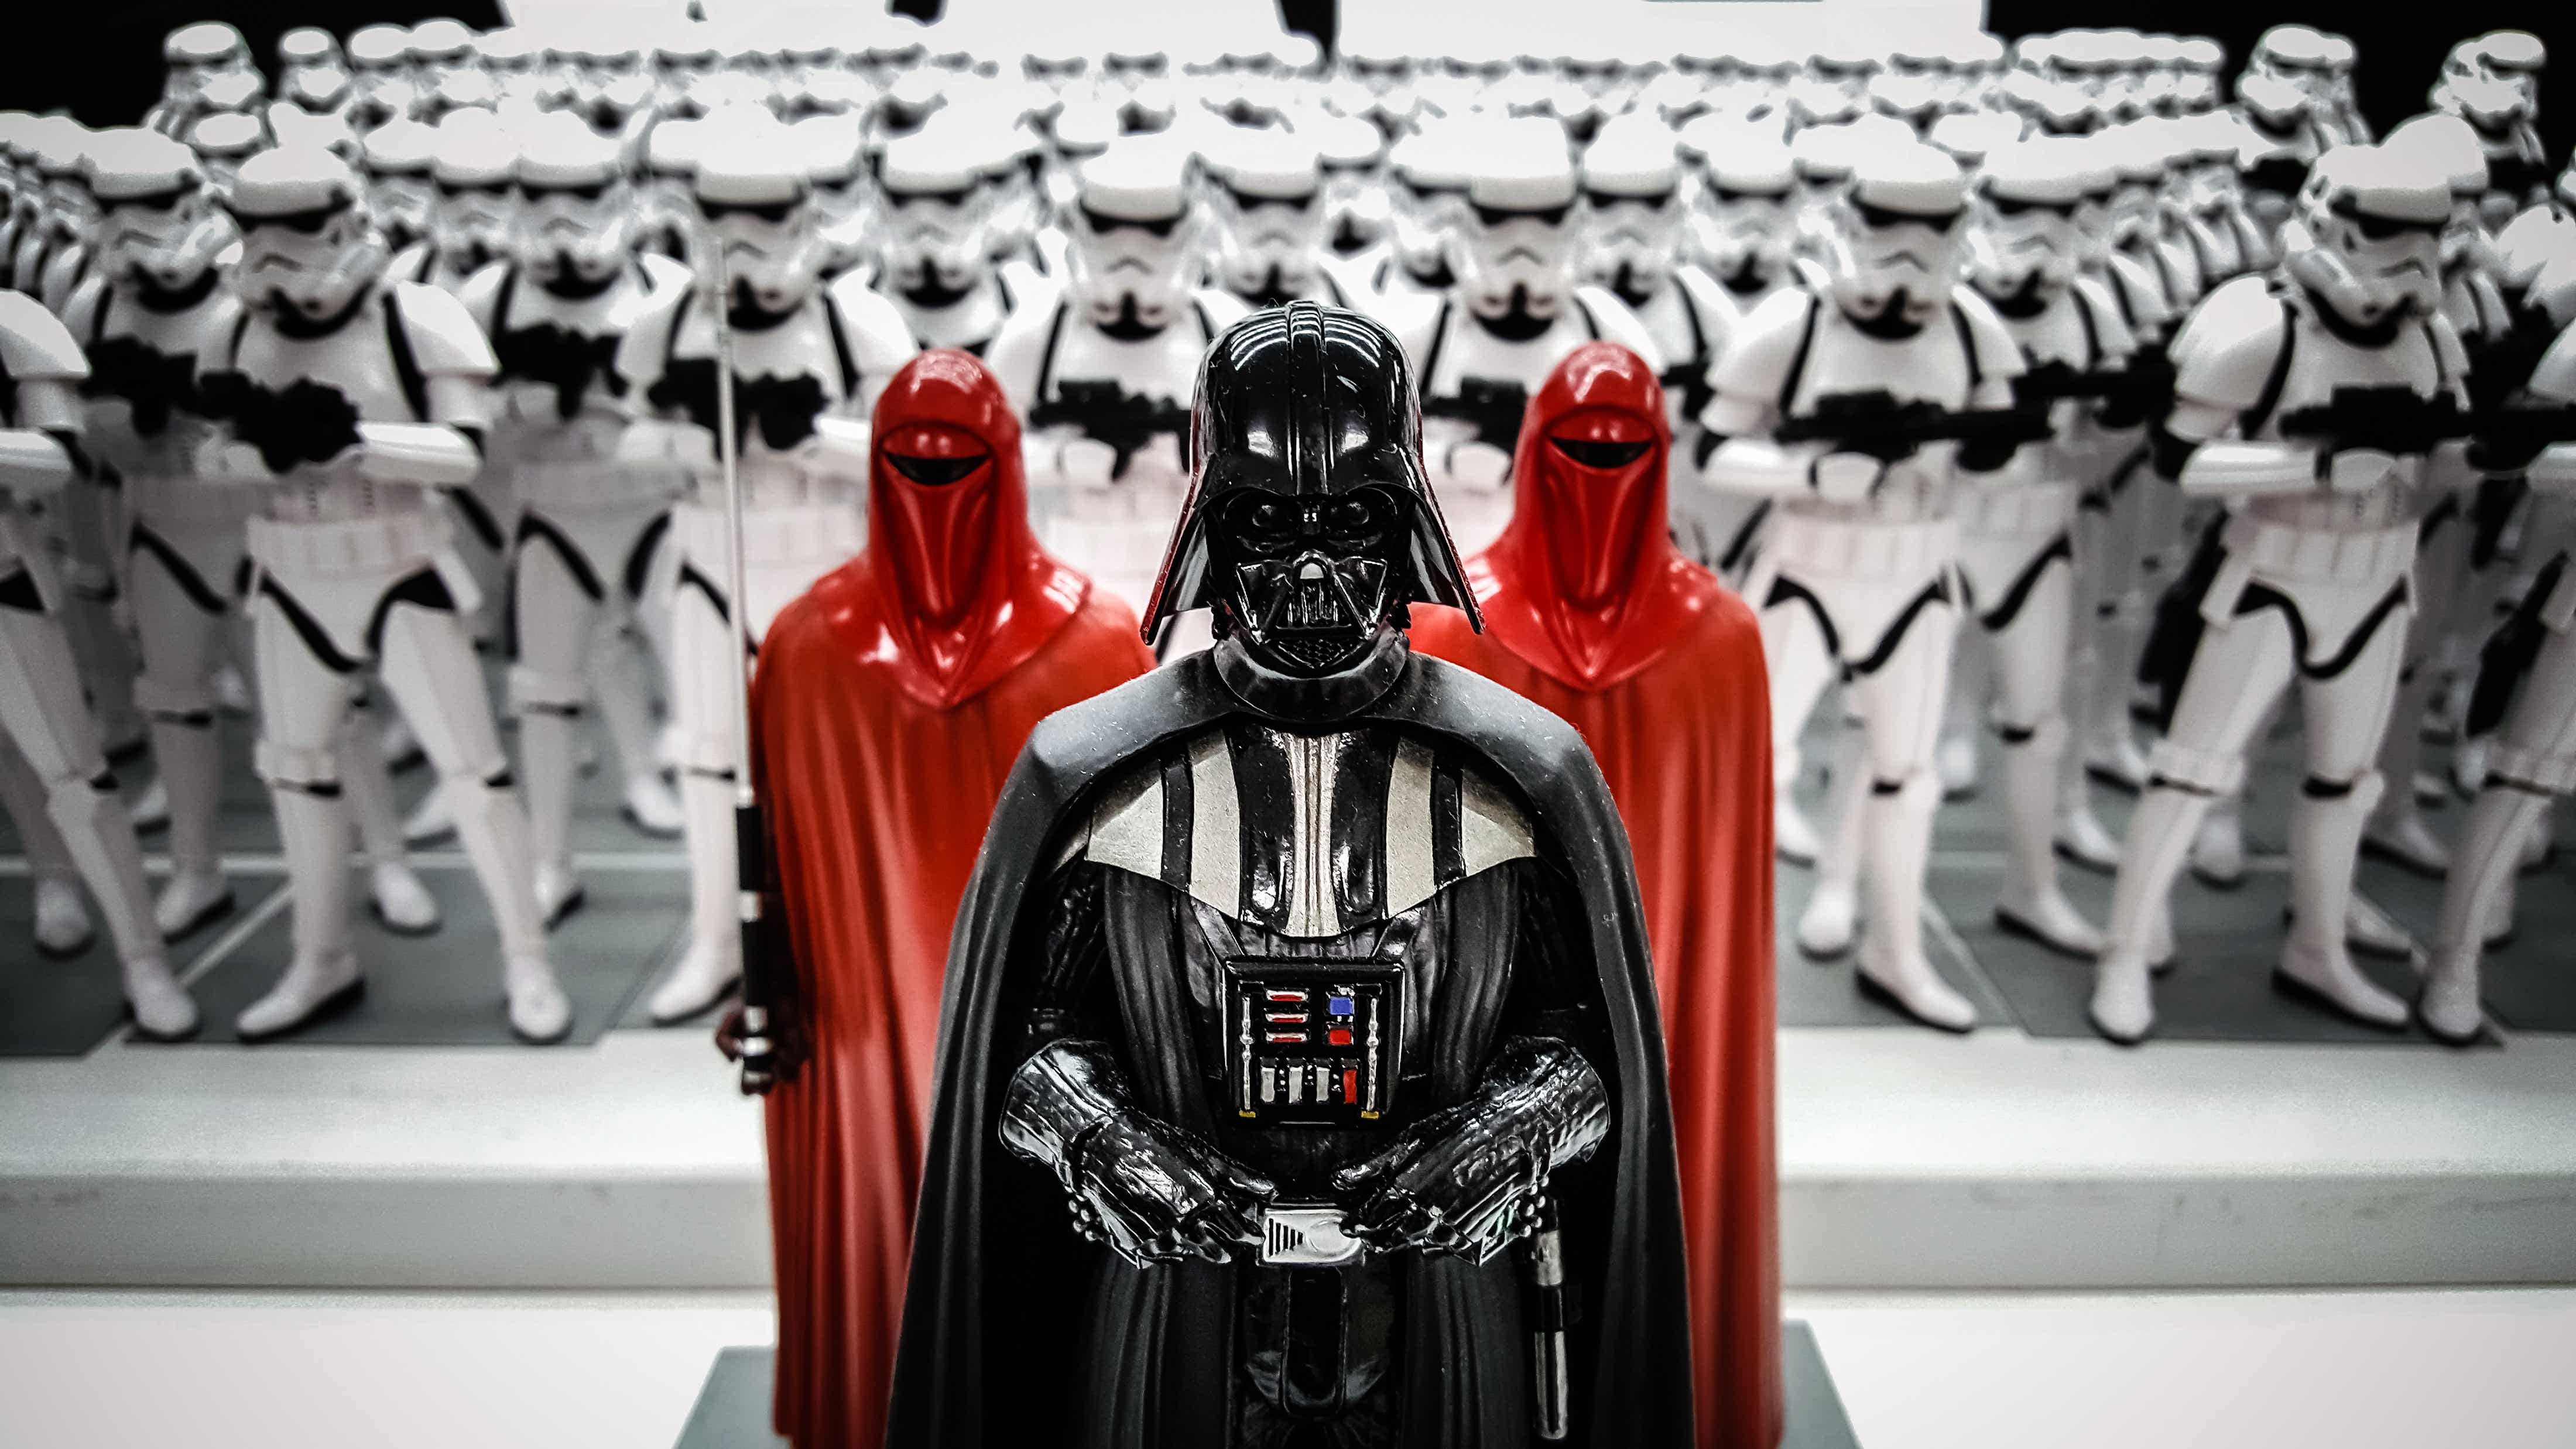 Star Wars Darth Vader Empire